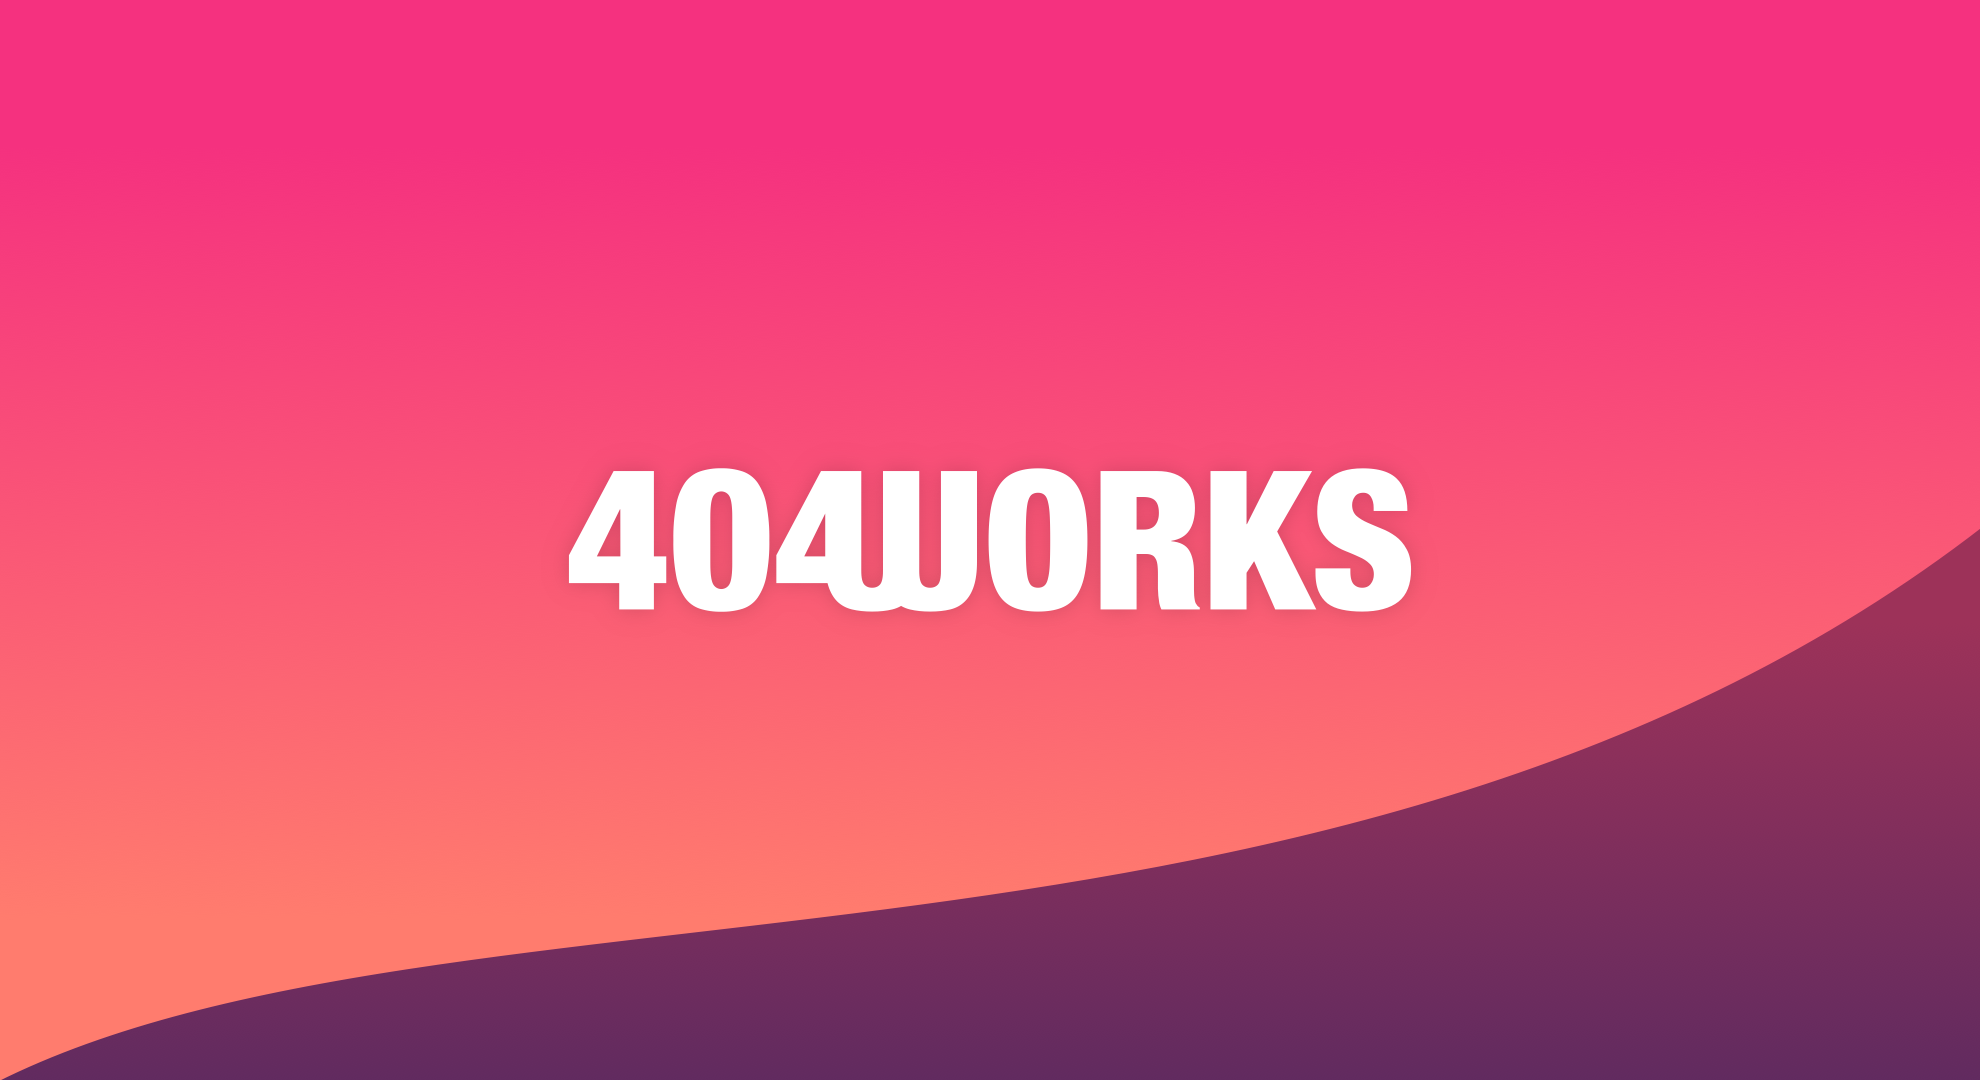 (c) 404works.com